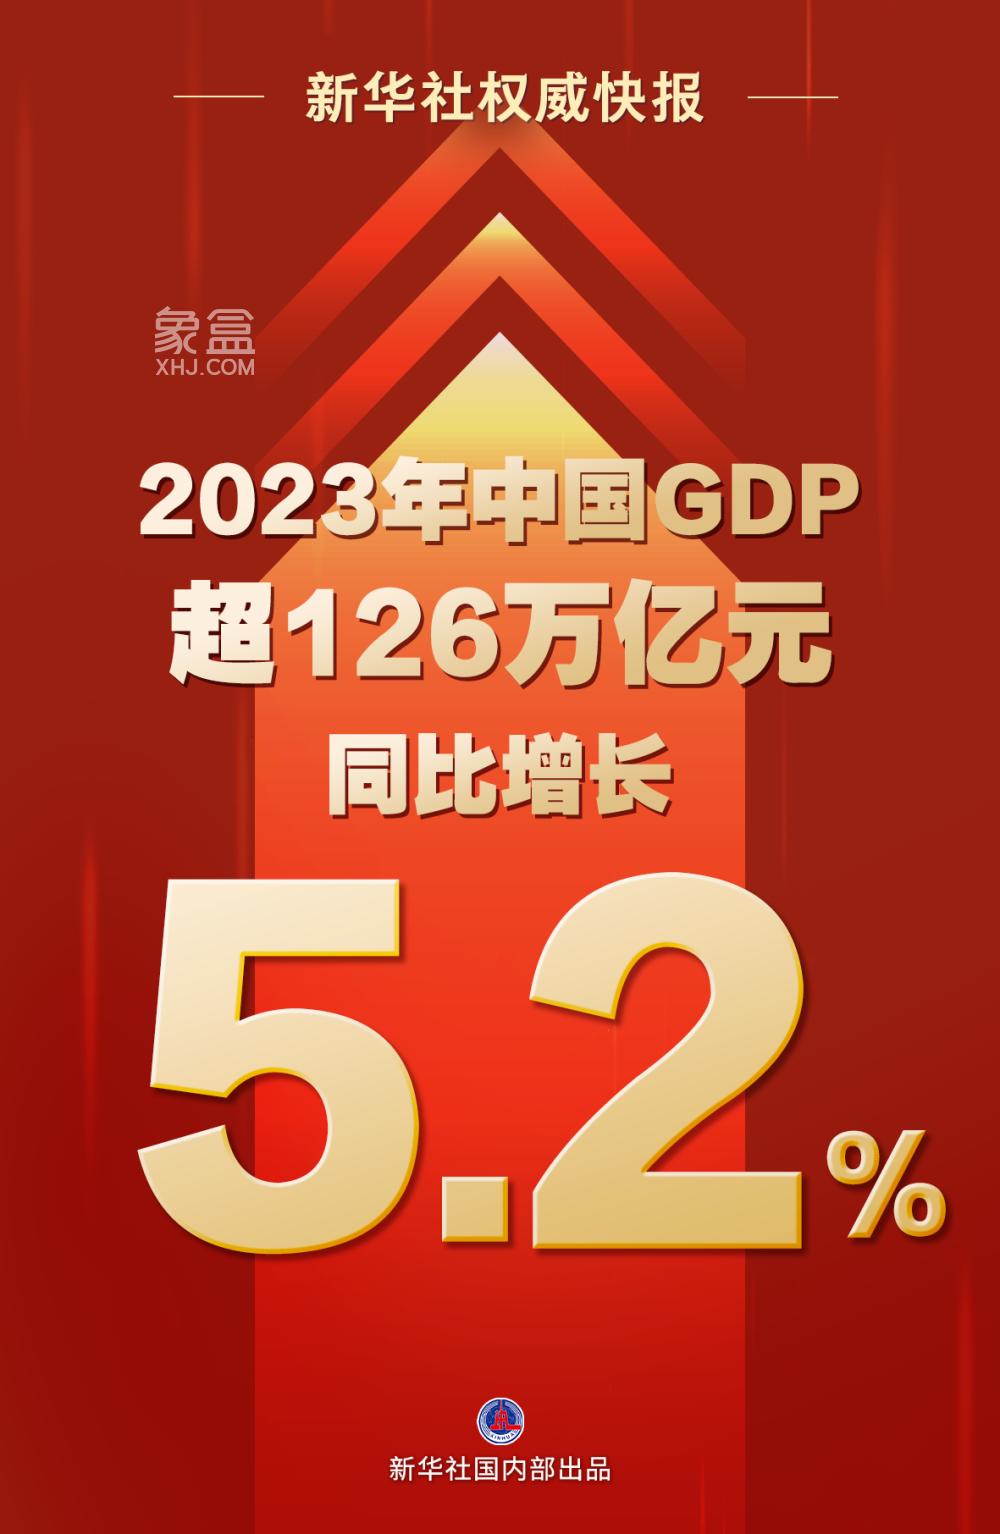 2023年中国GDP1260582亿元，比2022年增长5.2%！